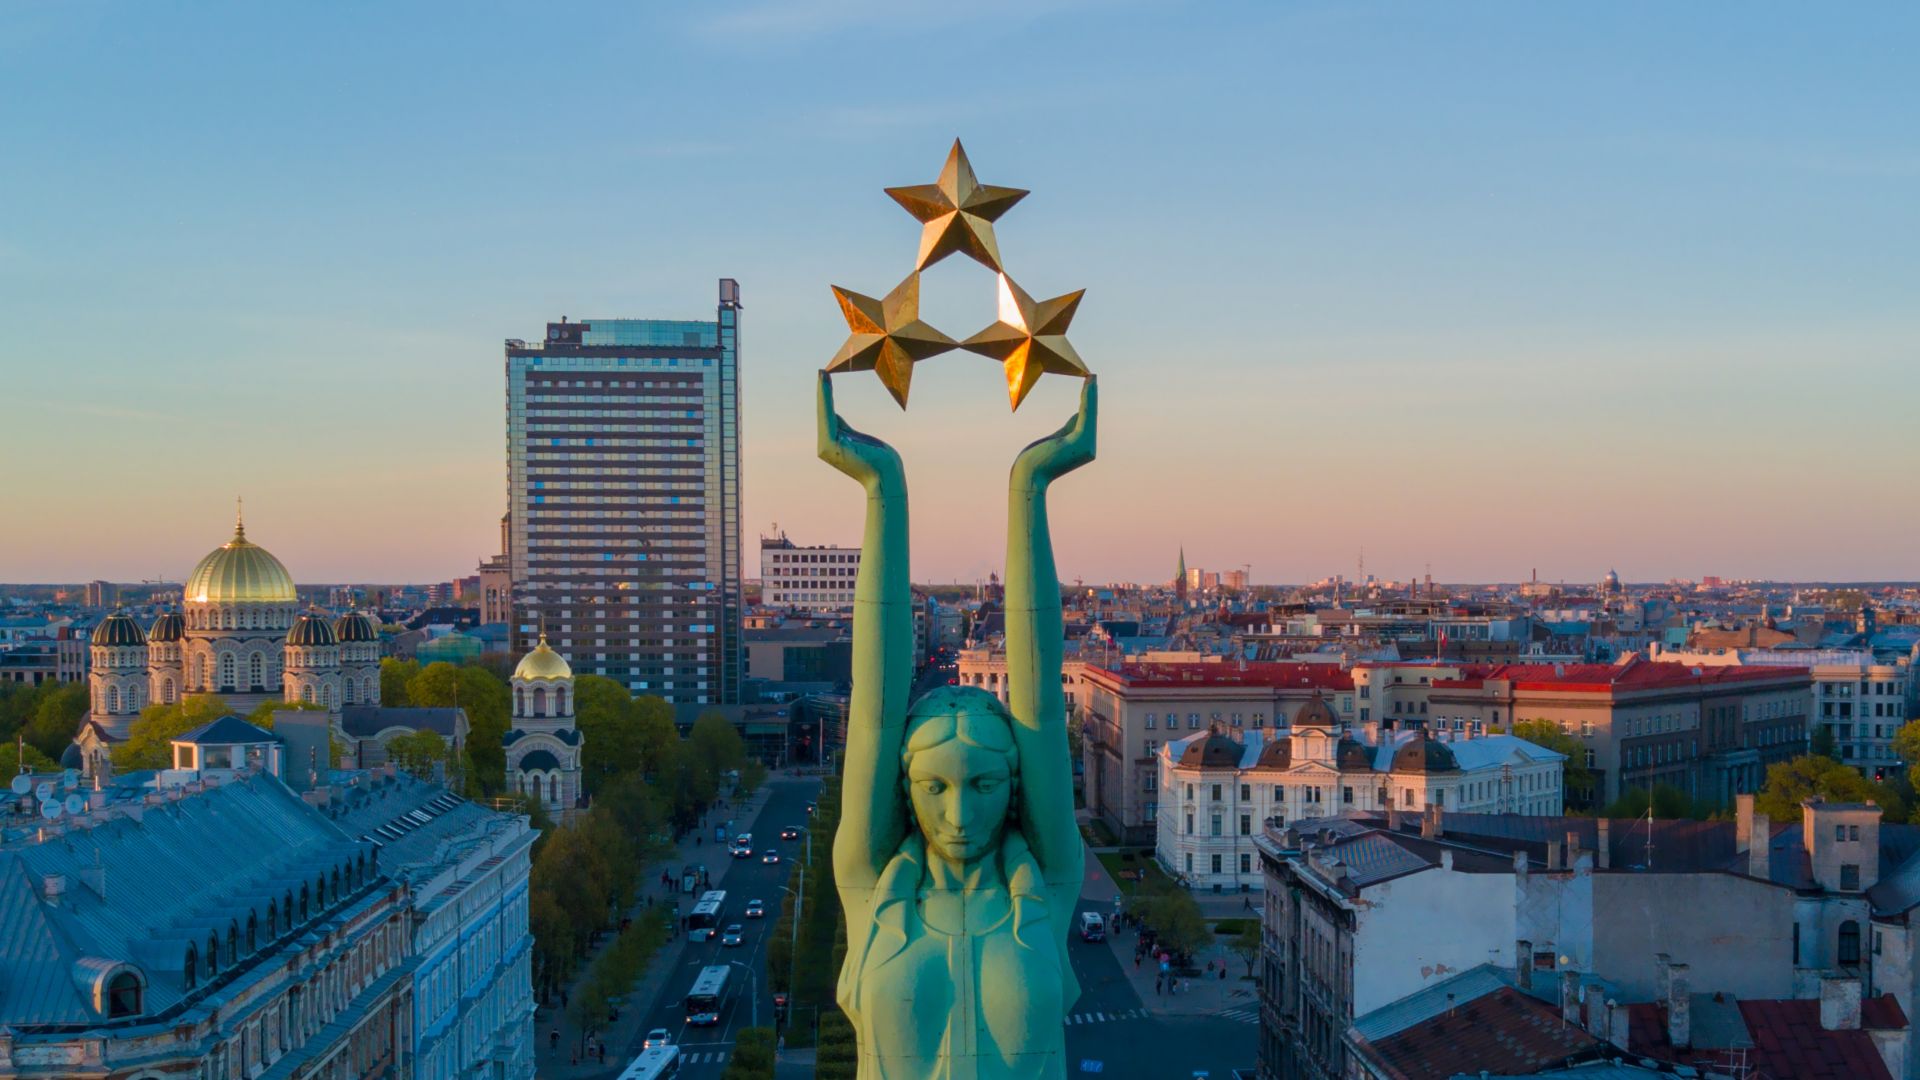 Nuostabus saulėlydžio vaizdas Rygoje, šalia laisvės statulos – Mildos, simbolizuojančios Latvijos laisvę. Laisvės statula laiko virš miesto iškėlusi tris žvaigždes.